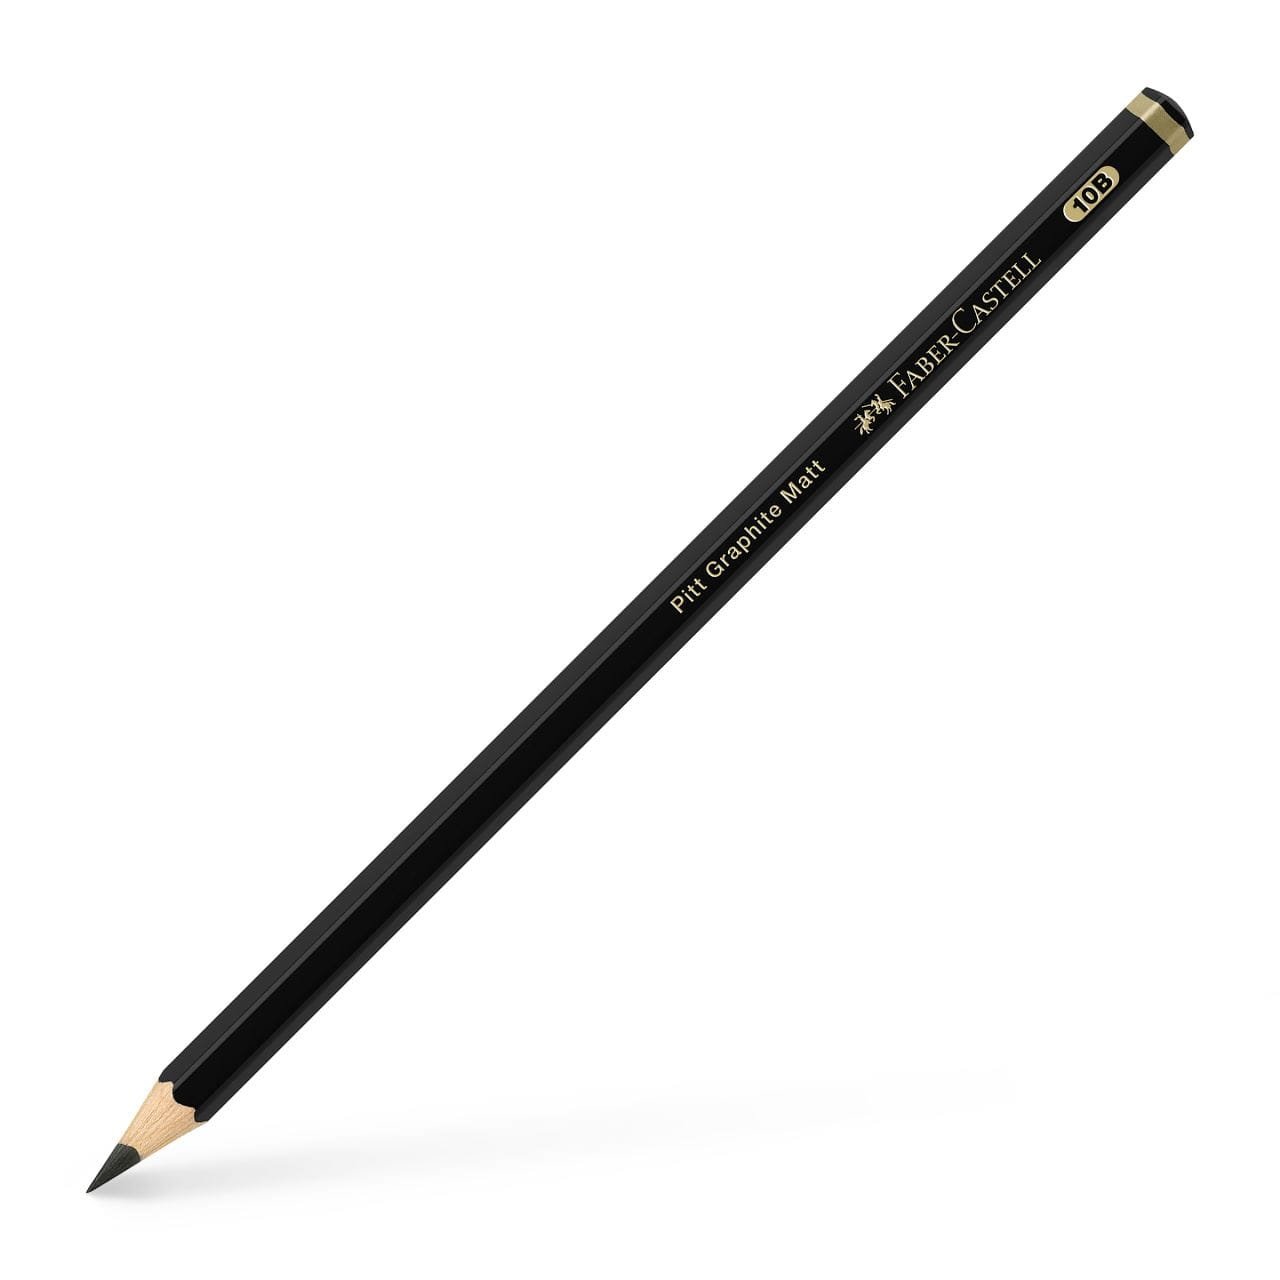 Faber-Castell - Pitt Graphite Matt pencil, 10B